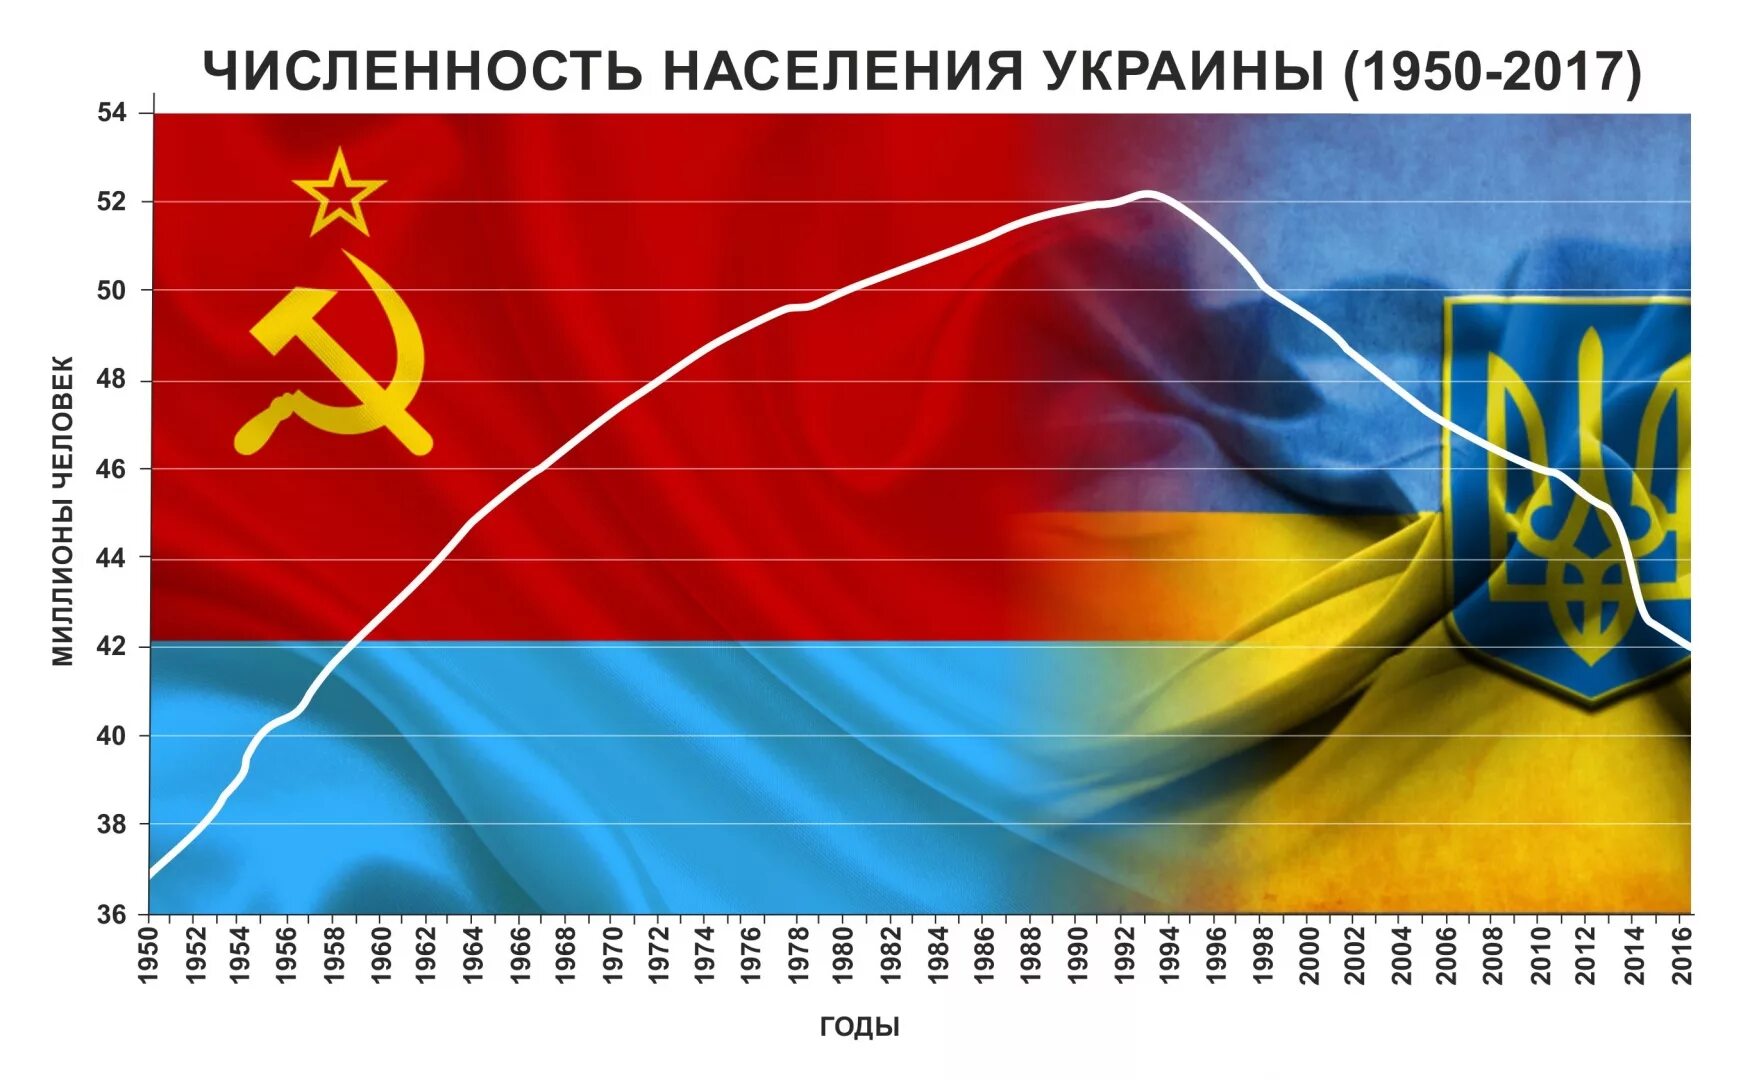 Украина население численность. Численность населения Украины. Сисленностьгаселнния Украины. Демография Украины. Население Украины график.